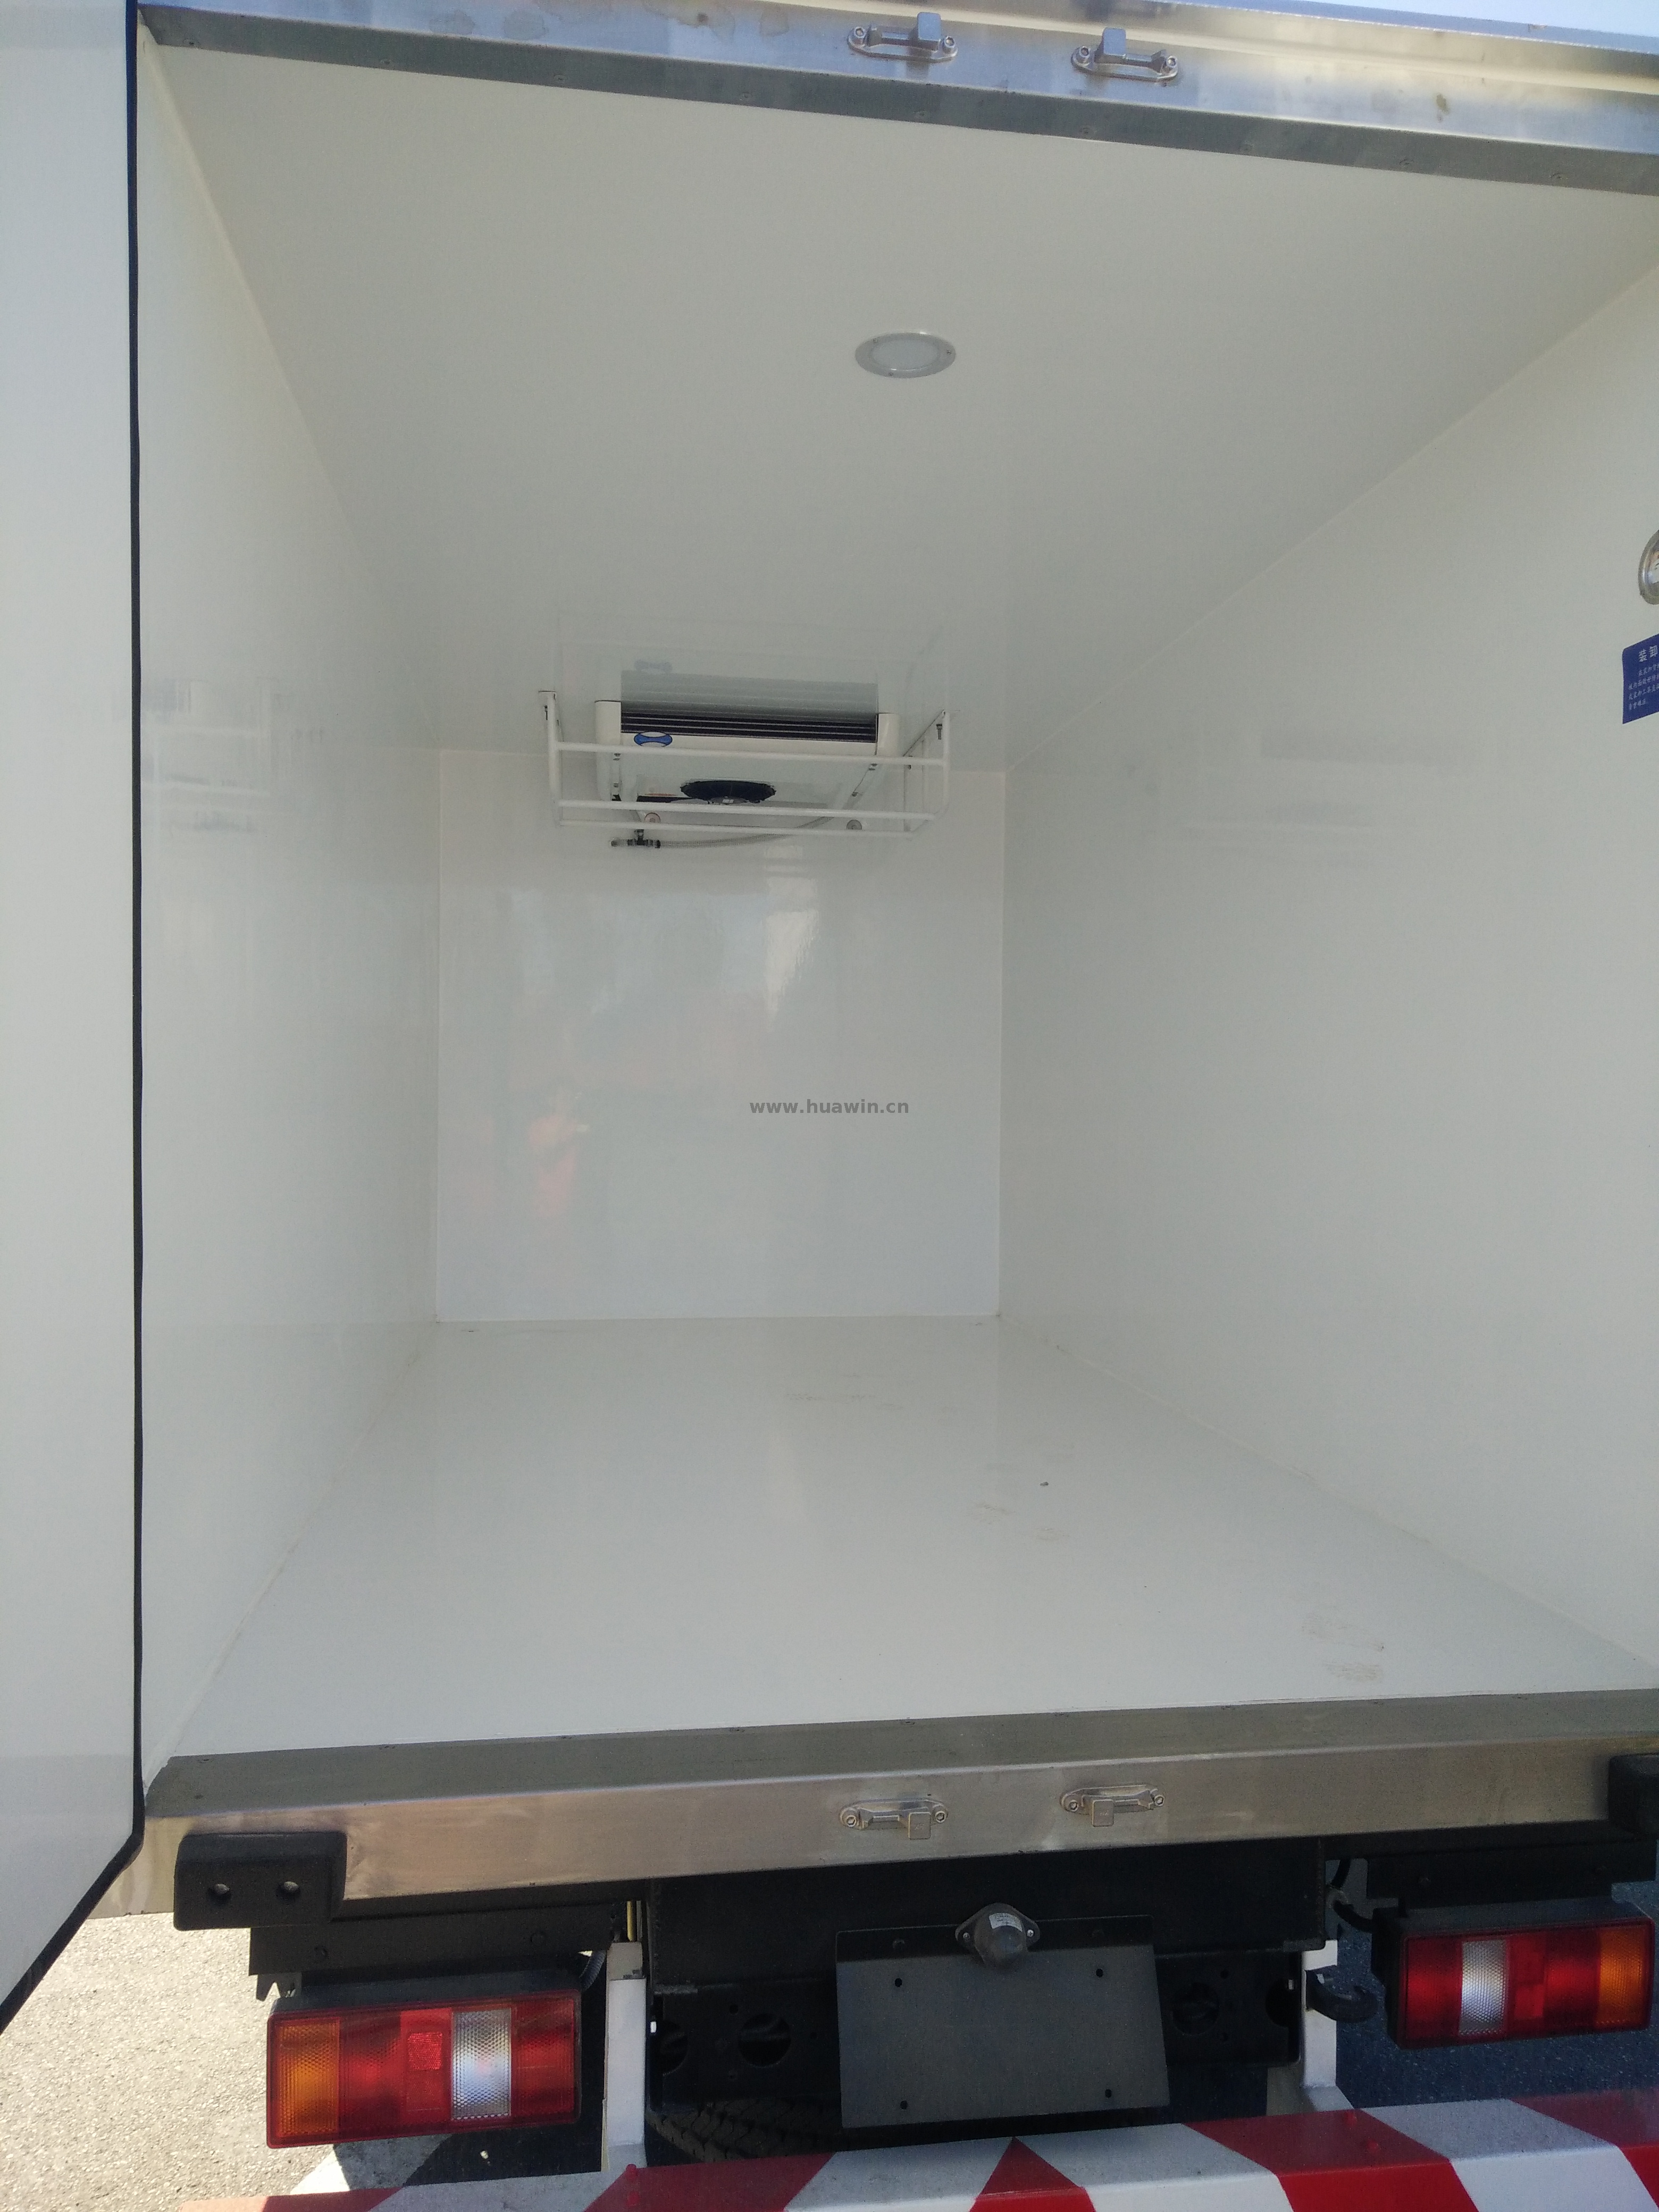 SINOTRUK HOWO 4x2 Refrigerator Truck -5Ton